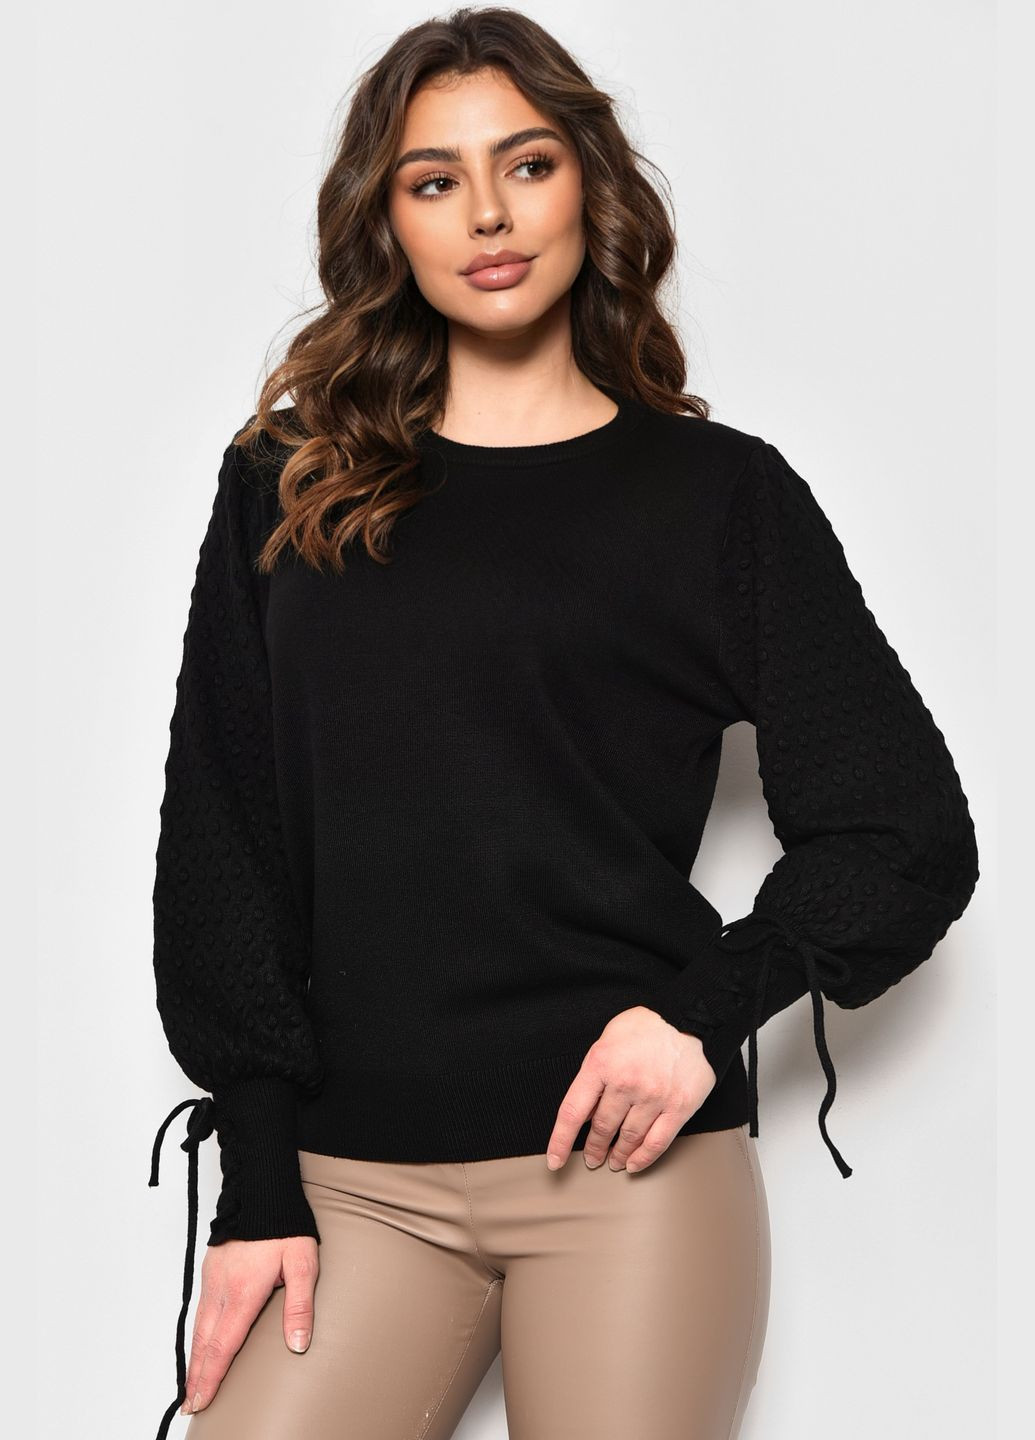 Черный зимний свитер женский черного цвета пуловер Let's Shop